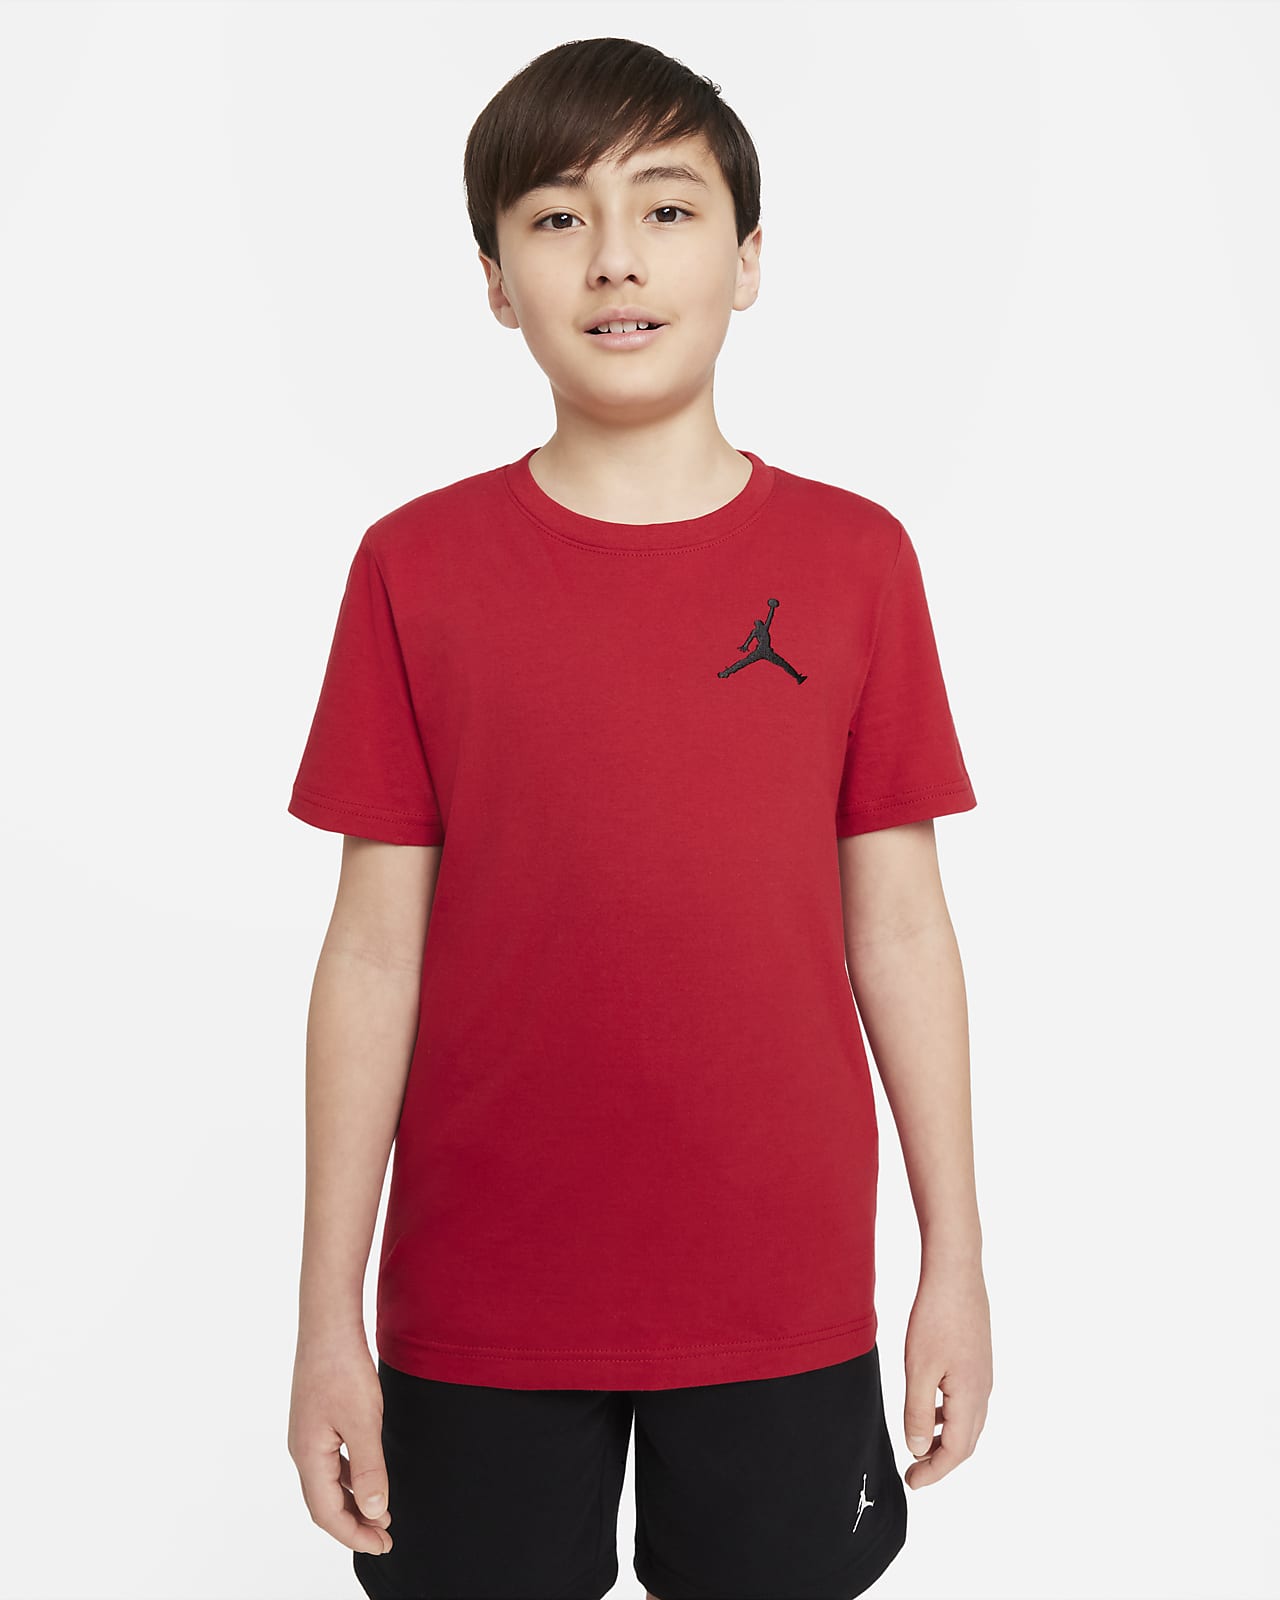 Tričko Jordan pro větší děti (chlapce)